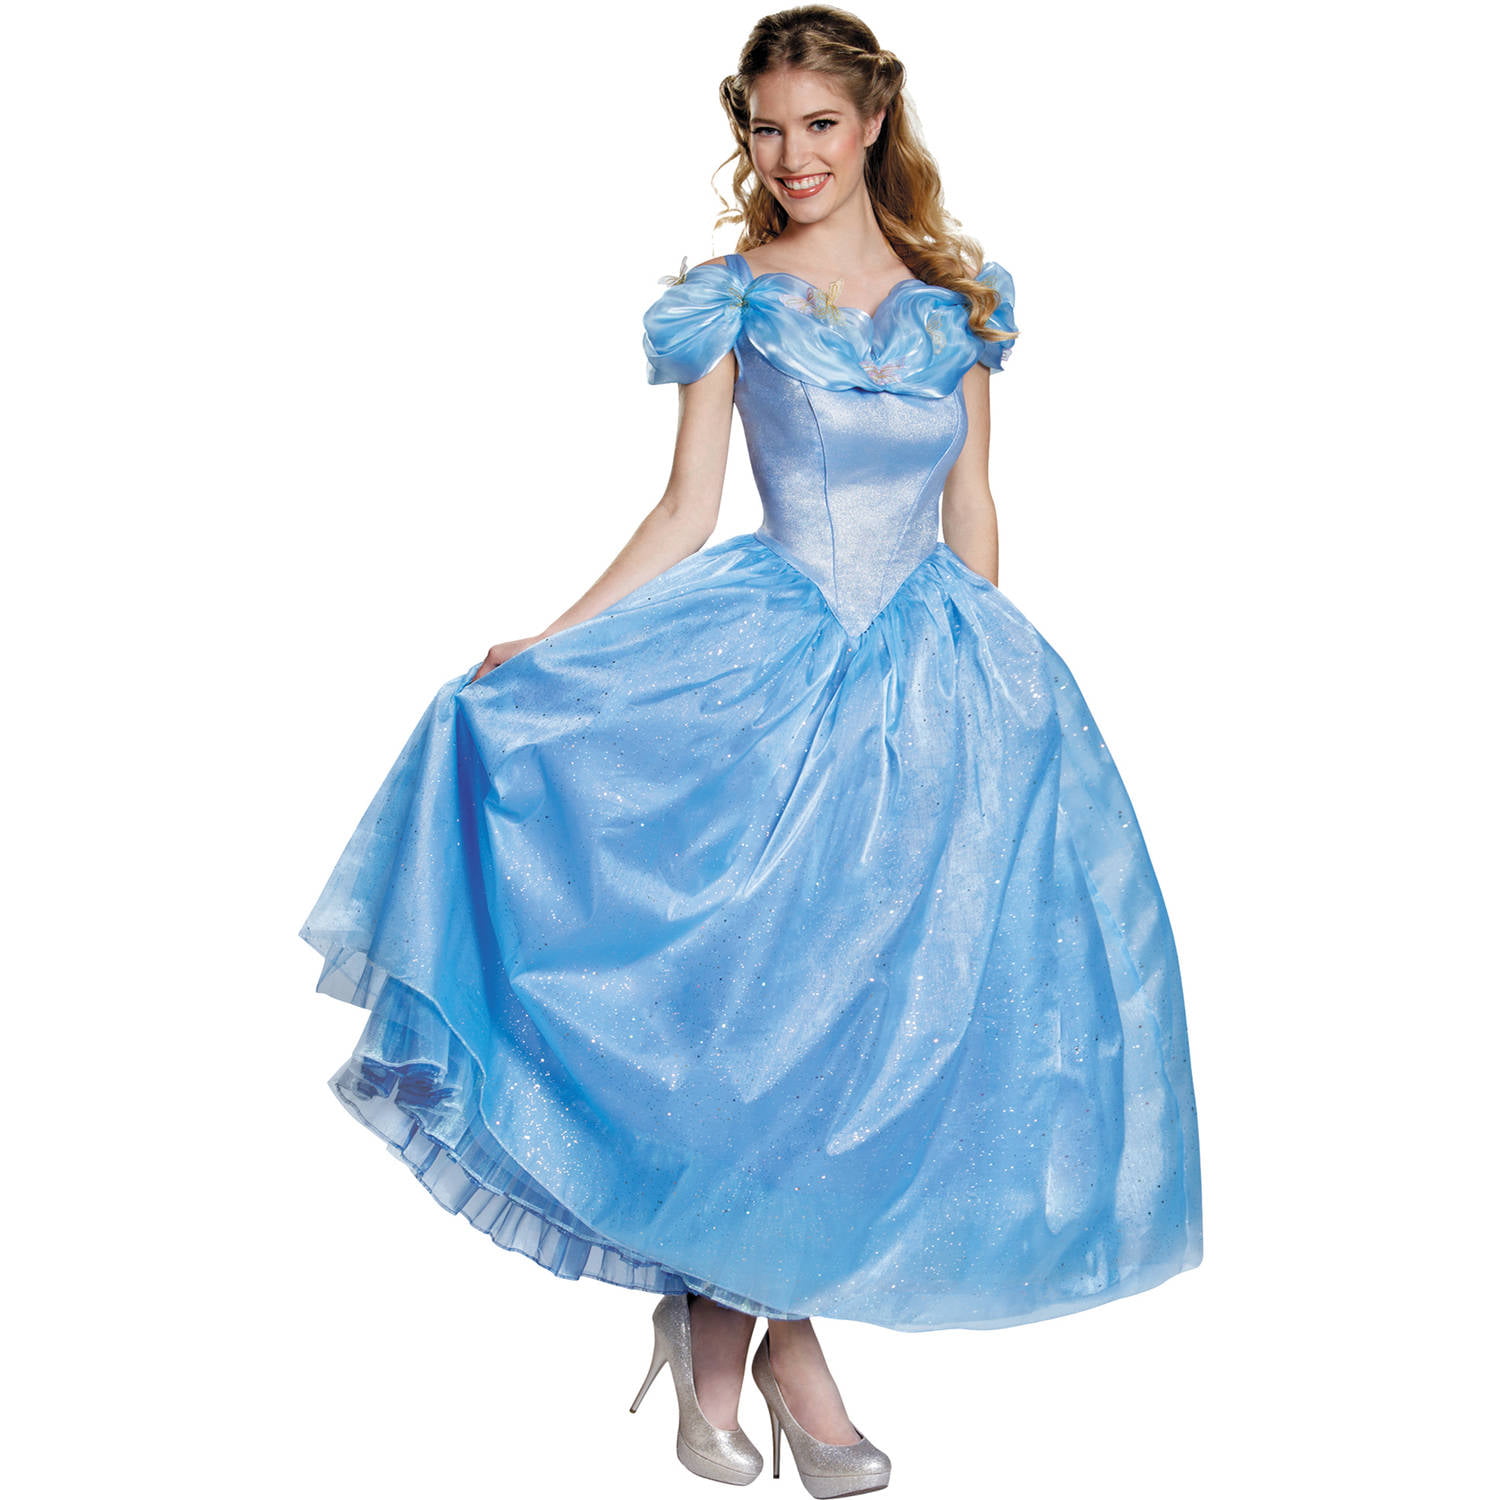 Cinderella Adult Prestige Women's Adult Halloween Costume - Walmart.com